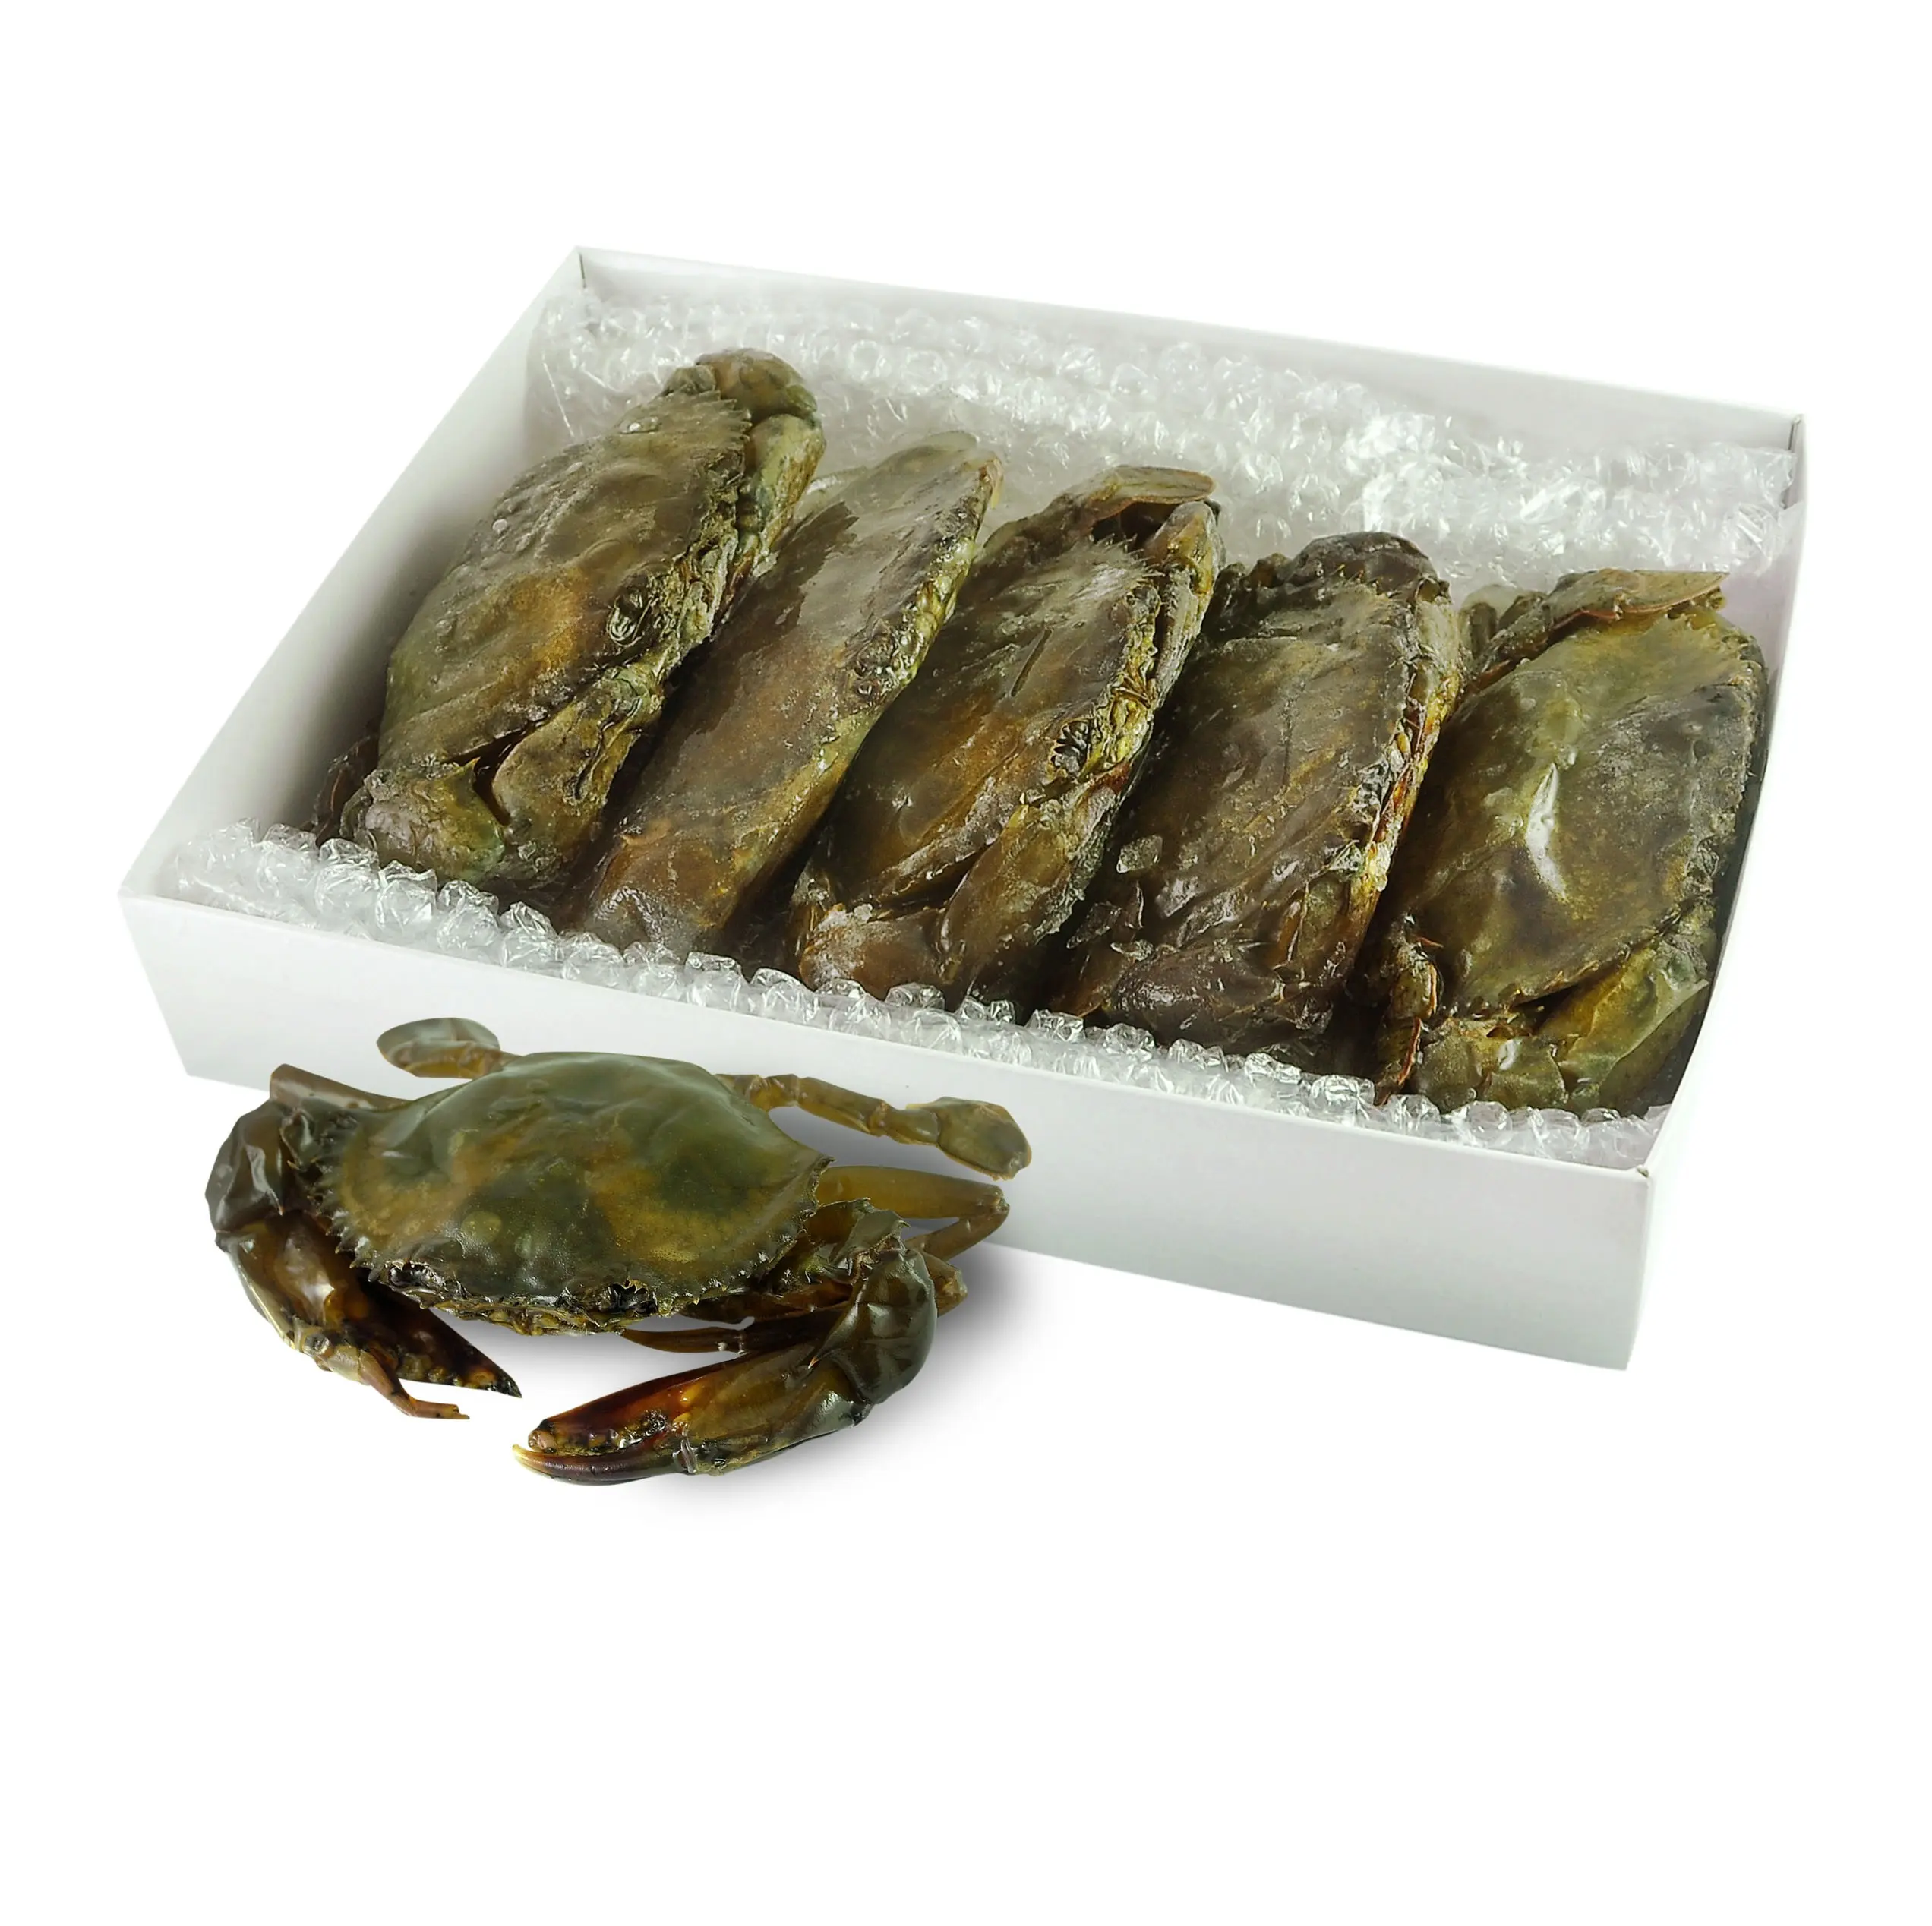 Beste Qualität Heißer Verkaufs preis Lebende Schlamm krabben/Gefrorene Schlamm krabben Meeres früchte/Frische Krabben